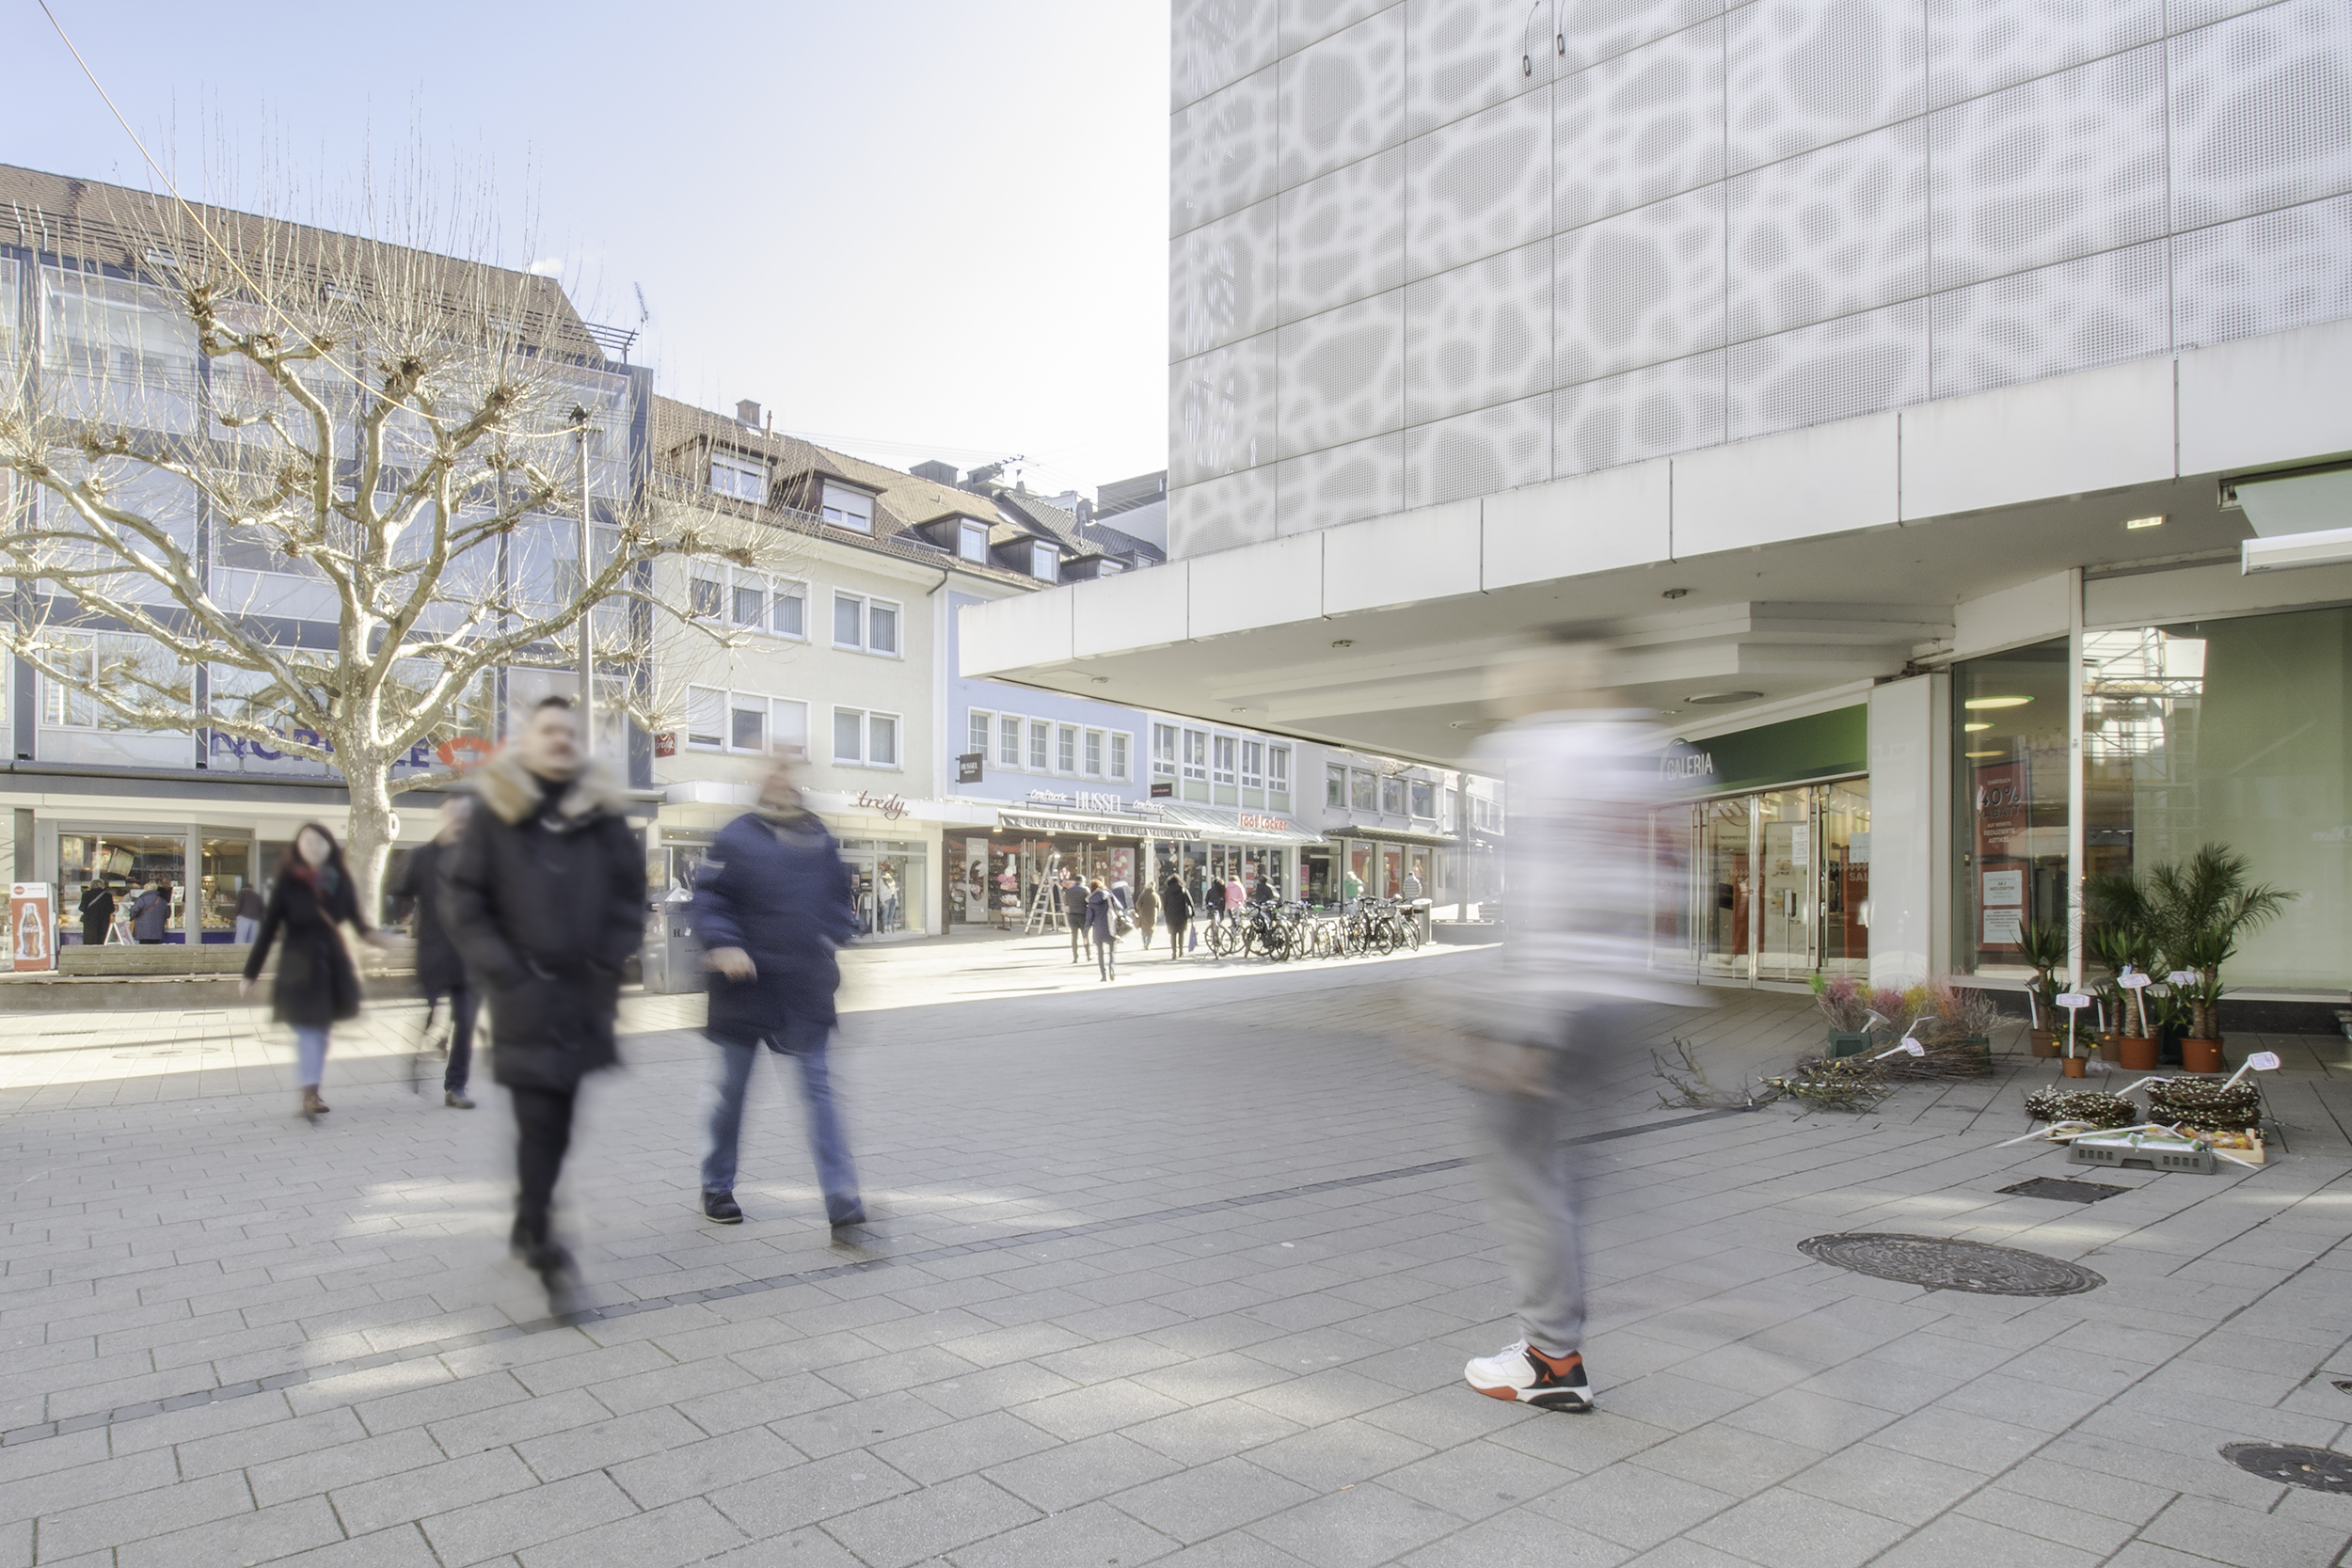 Auf dem Bild ist die Fußgängerzone mit Blick von der Stadtgalerie zu sehen. Rechts im Bild ist der Eingang des Einkaufszentrums Galeria Kaufhof abgebildet.